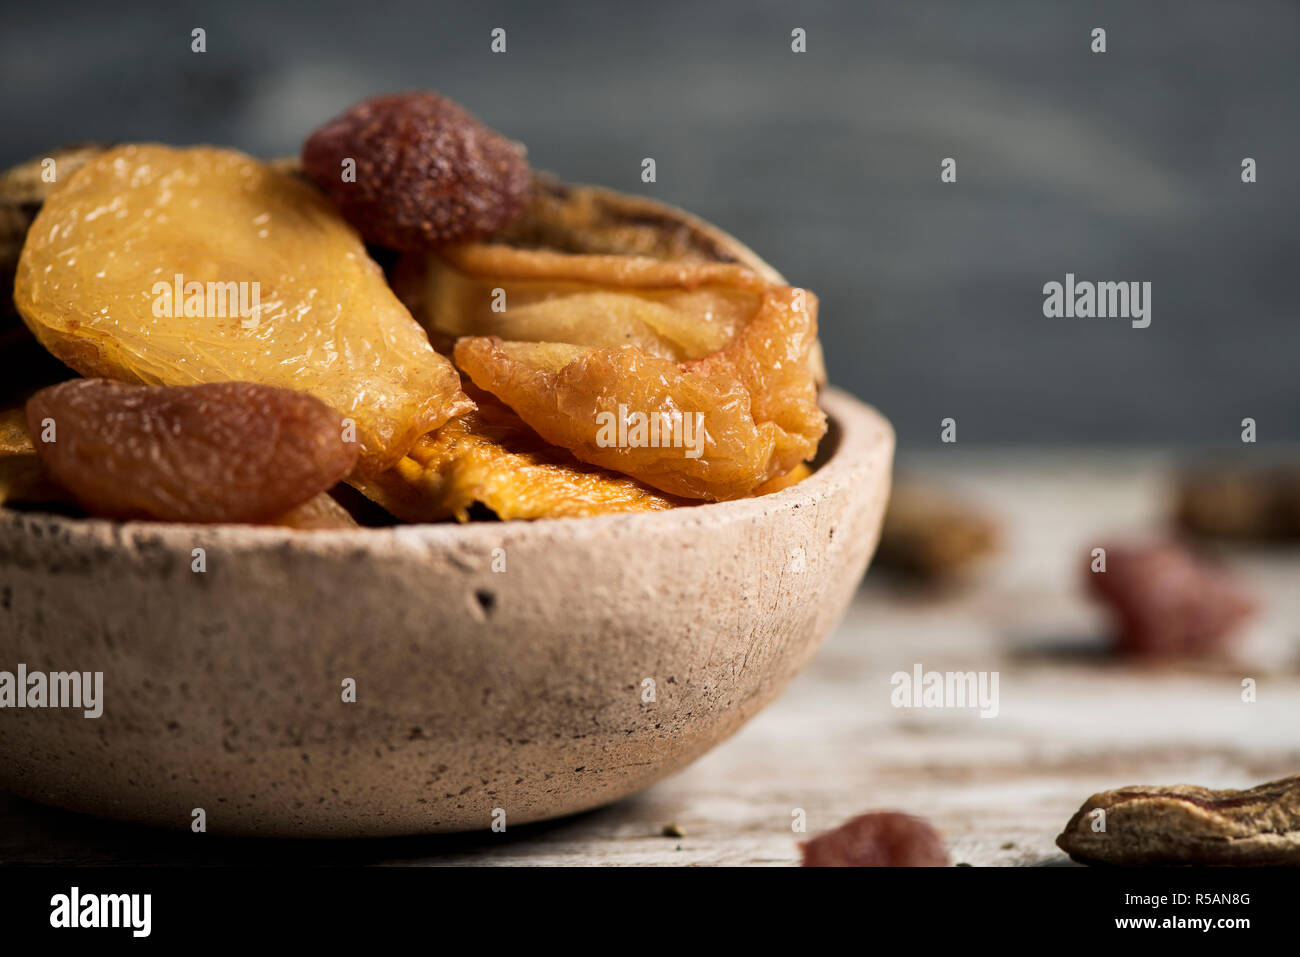 Libre d'un bol en terre cuite rustique rempli d'un assortiment de fruits secs, tels que poire, pêche, banane, fraise, Pomme, abricot ou sur une table en bois Banque D'Images